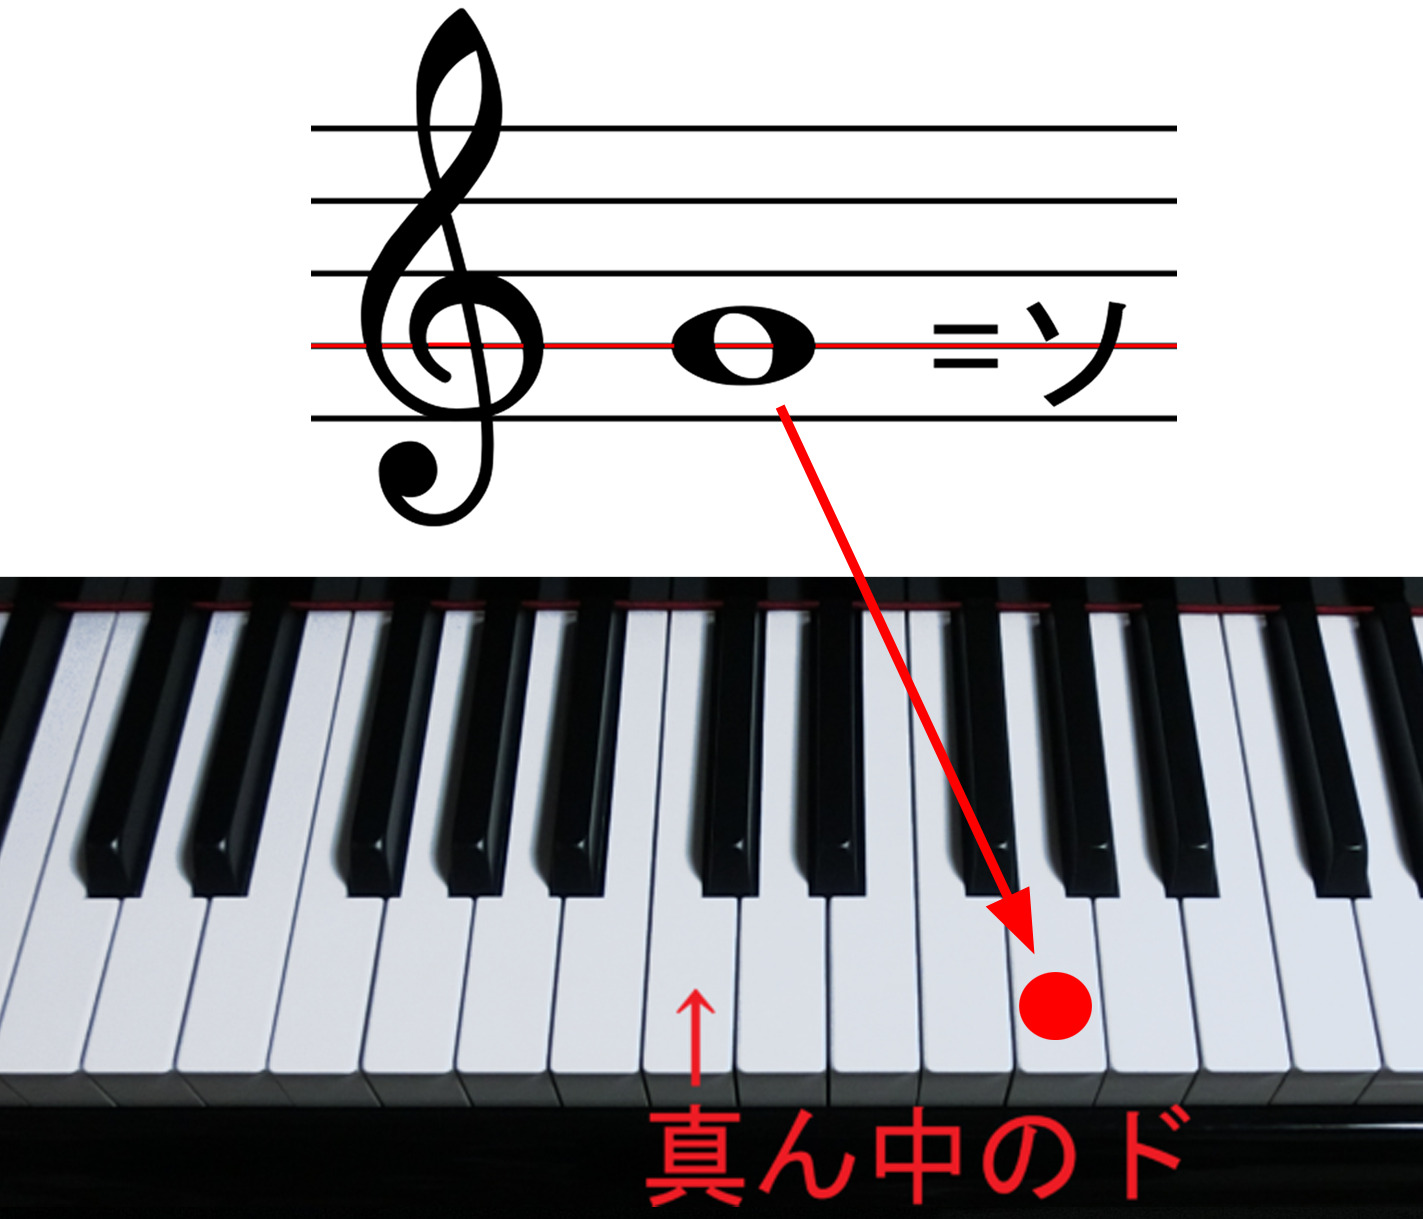 ト音記号の示すソと鍵盤でのソの位置